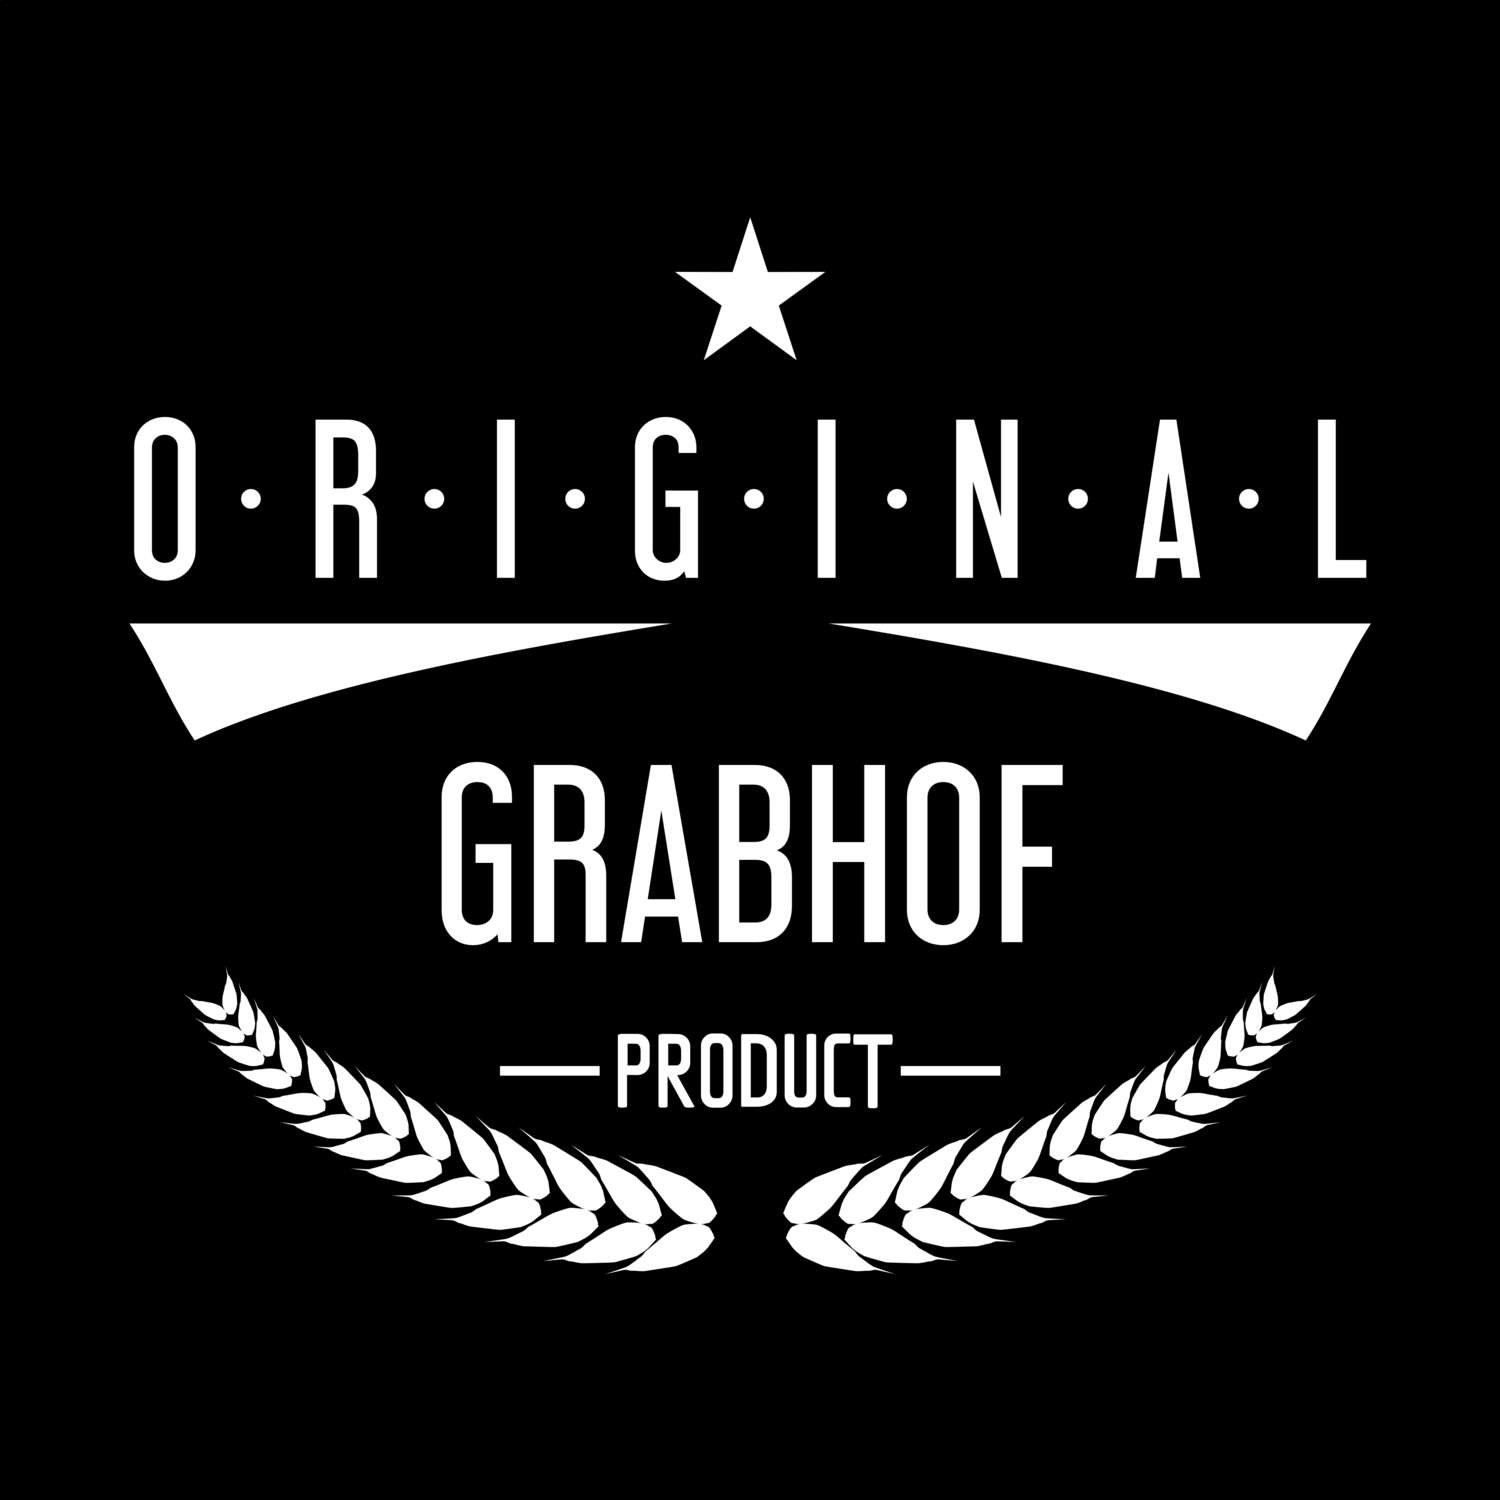 Grabhof T-Shirt »Original Product«